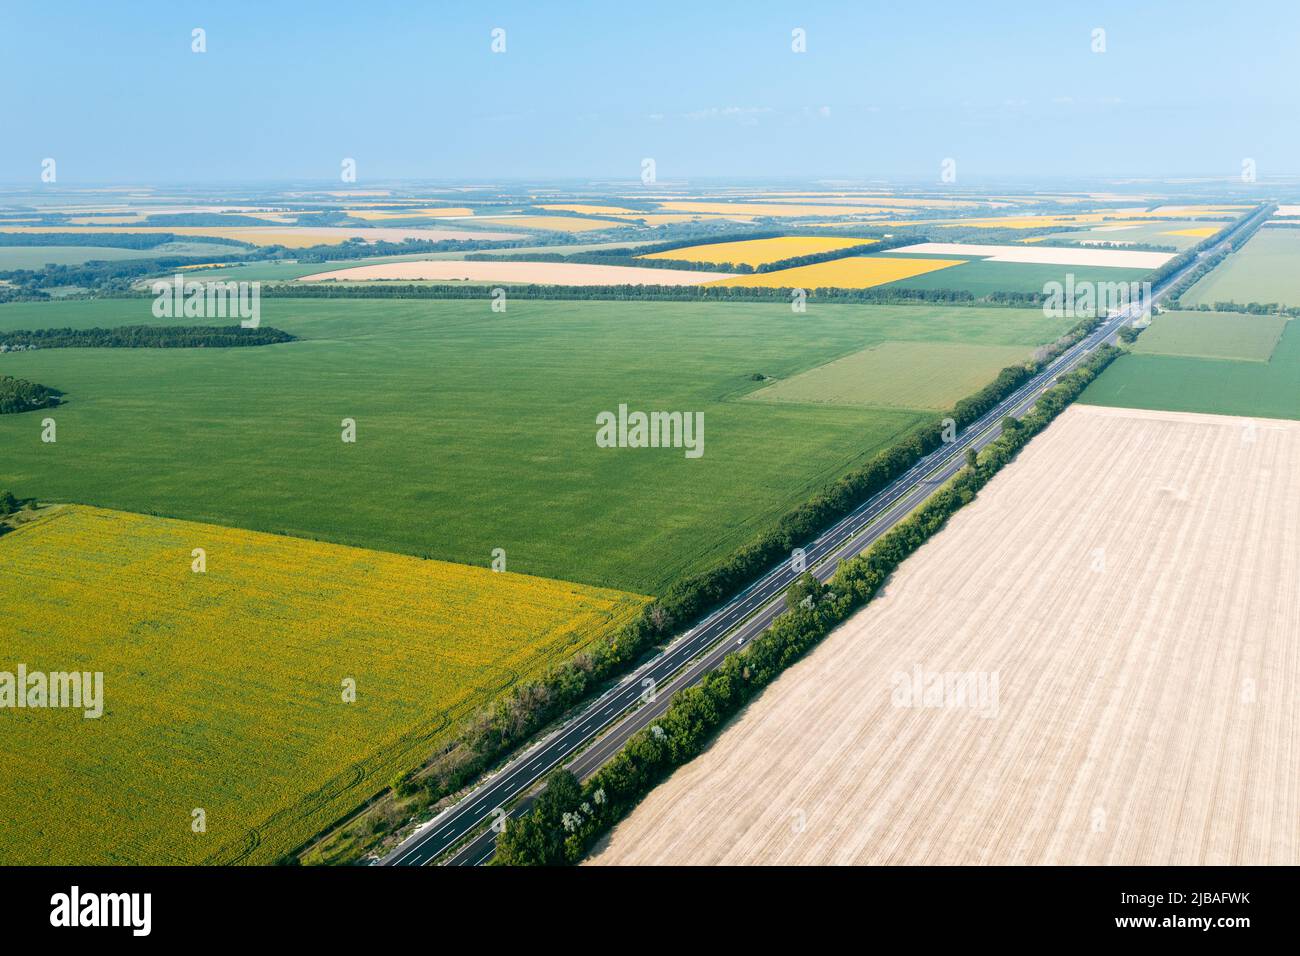 Landwirtschaftliche Flächen: Flächen verschiedener landwirtschaftlicher Felder aus großer Höhe: Grüne, gelbe Felder sind durch eine Autobahn getrennt. Landwirtschaft in einem Agrarland - Drohnenaufnahme von Plantagen. Stockfoto